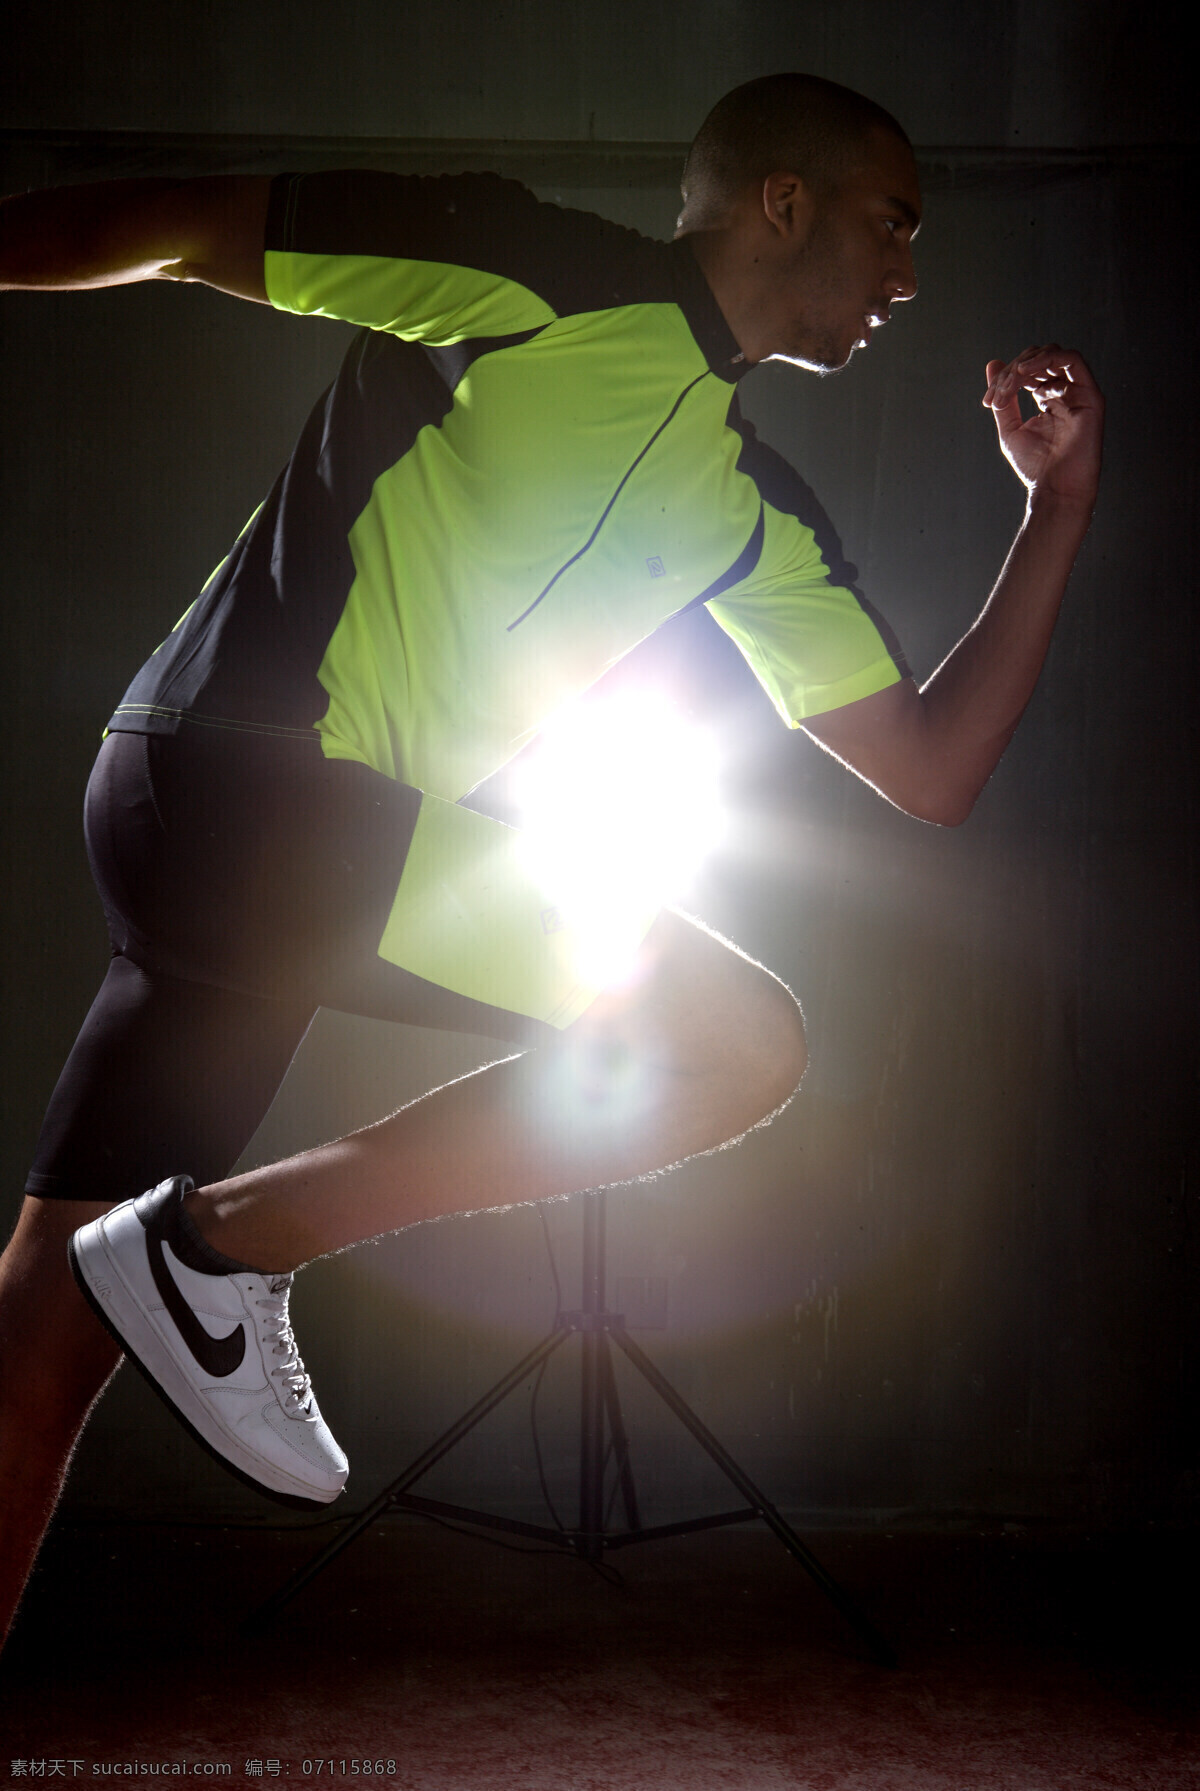 耐克 光 感 跑步 运动 光感 绿色 白鞋 阳光 动力 健康 黑裤 运动活力 男性男人 人物图库